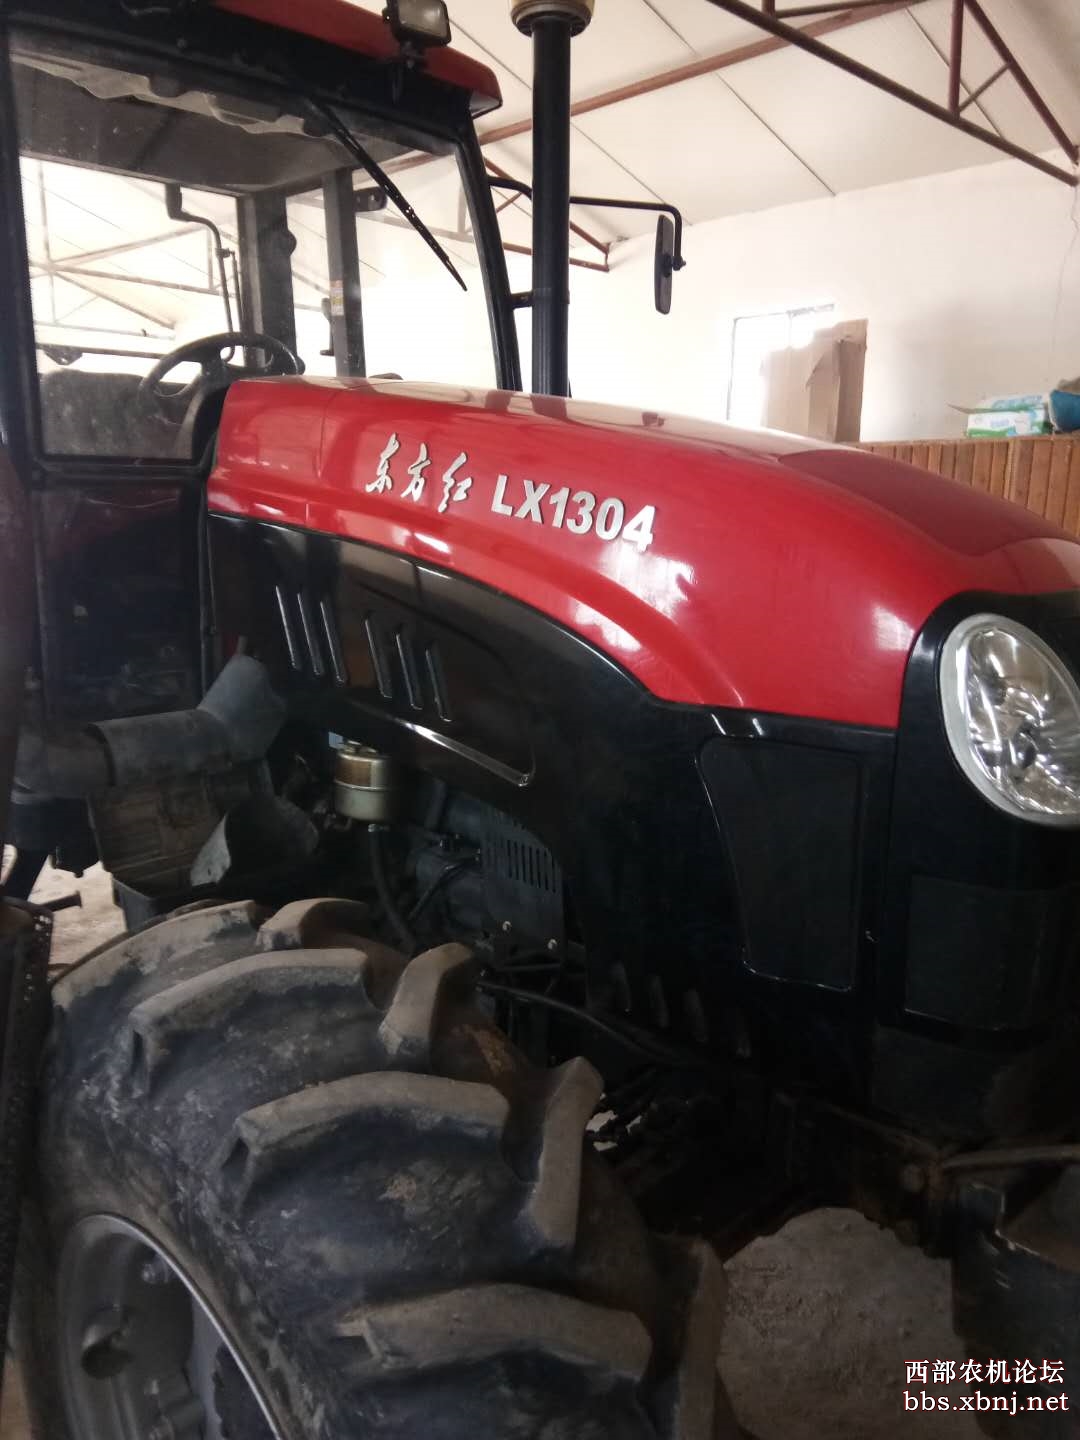 出售2015年的东方红1304拖拉机!